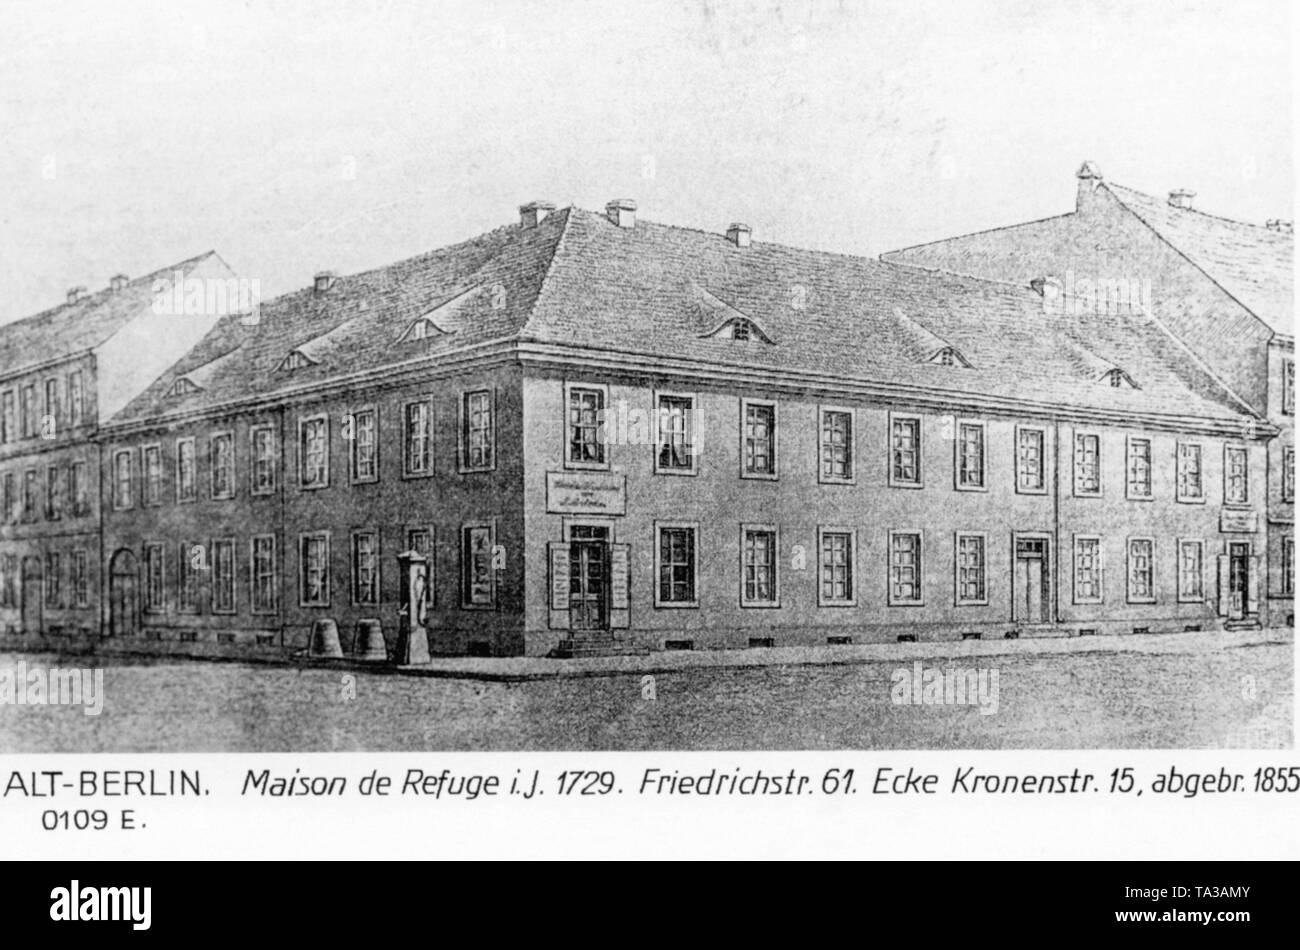 The Maison de Refuge in the Friedrichstrasse / corner Kronenestrasse in Berlin. It burnt down in 1855. Stock Photo